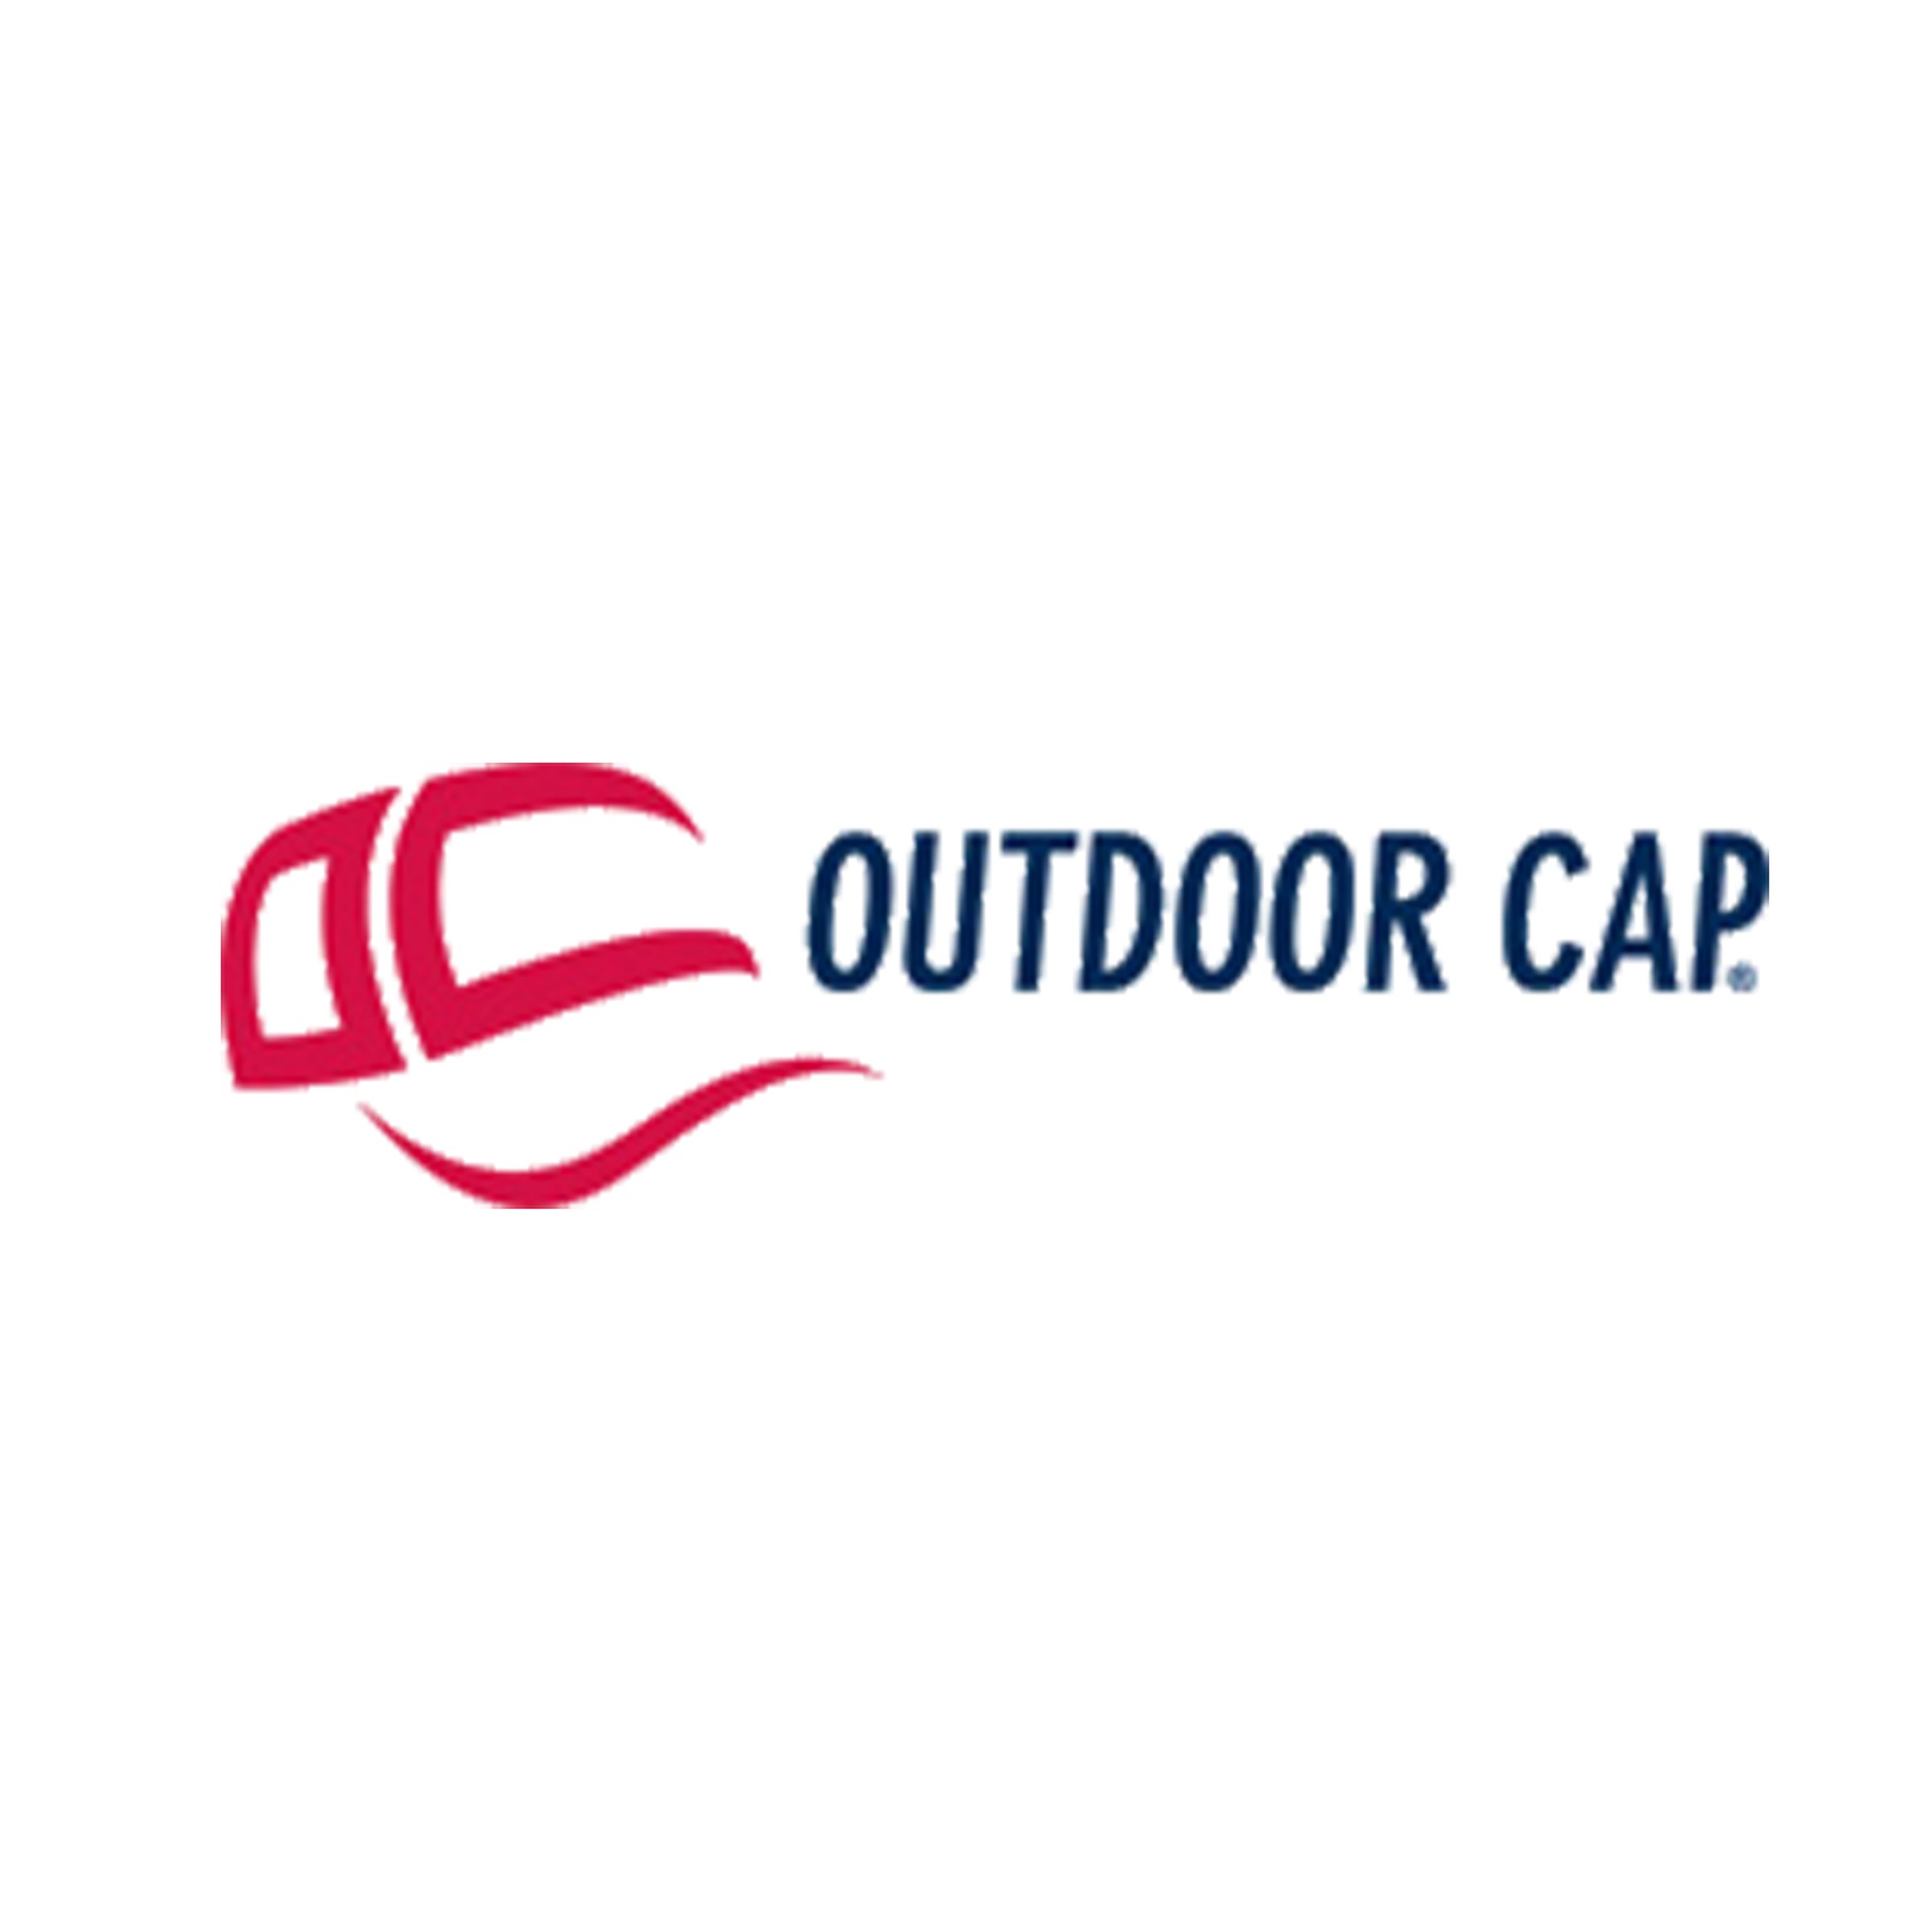 A_Outdoor-cap